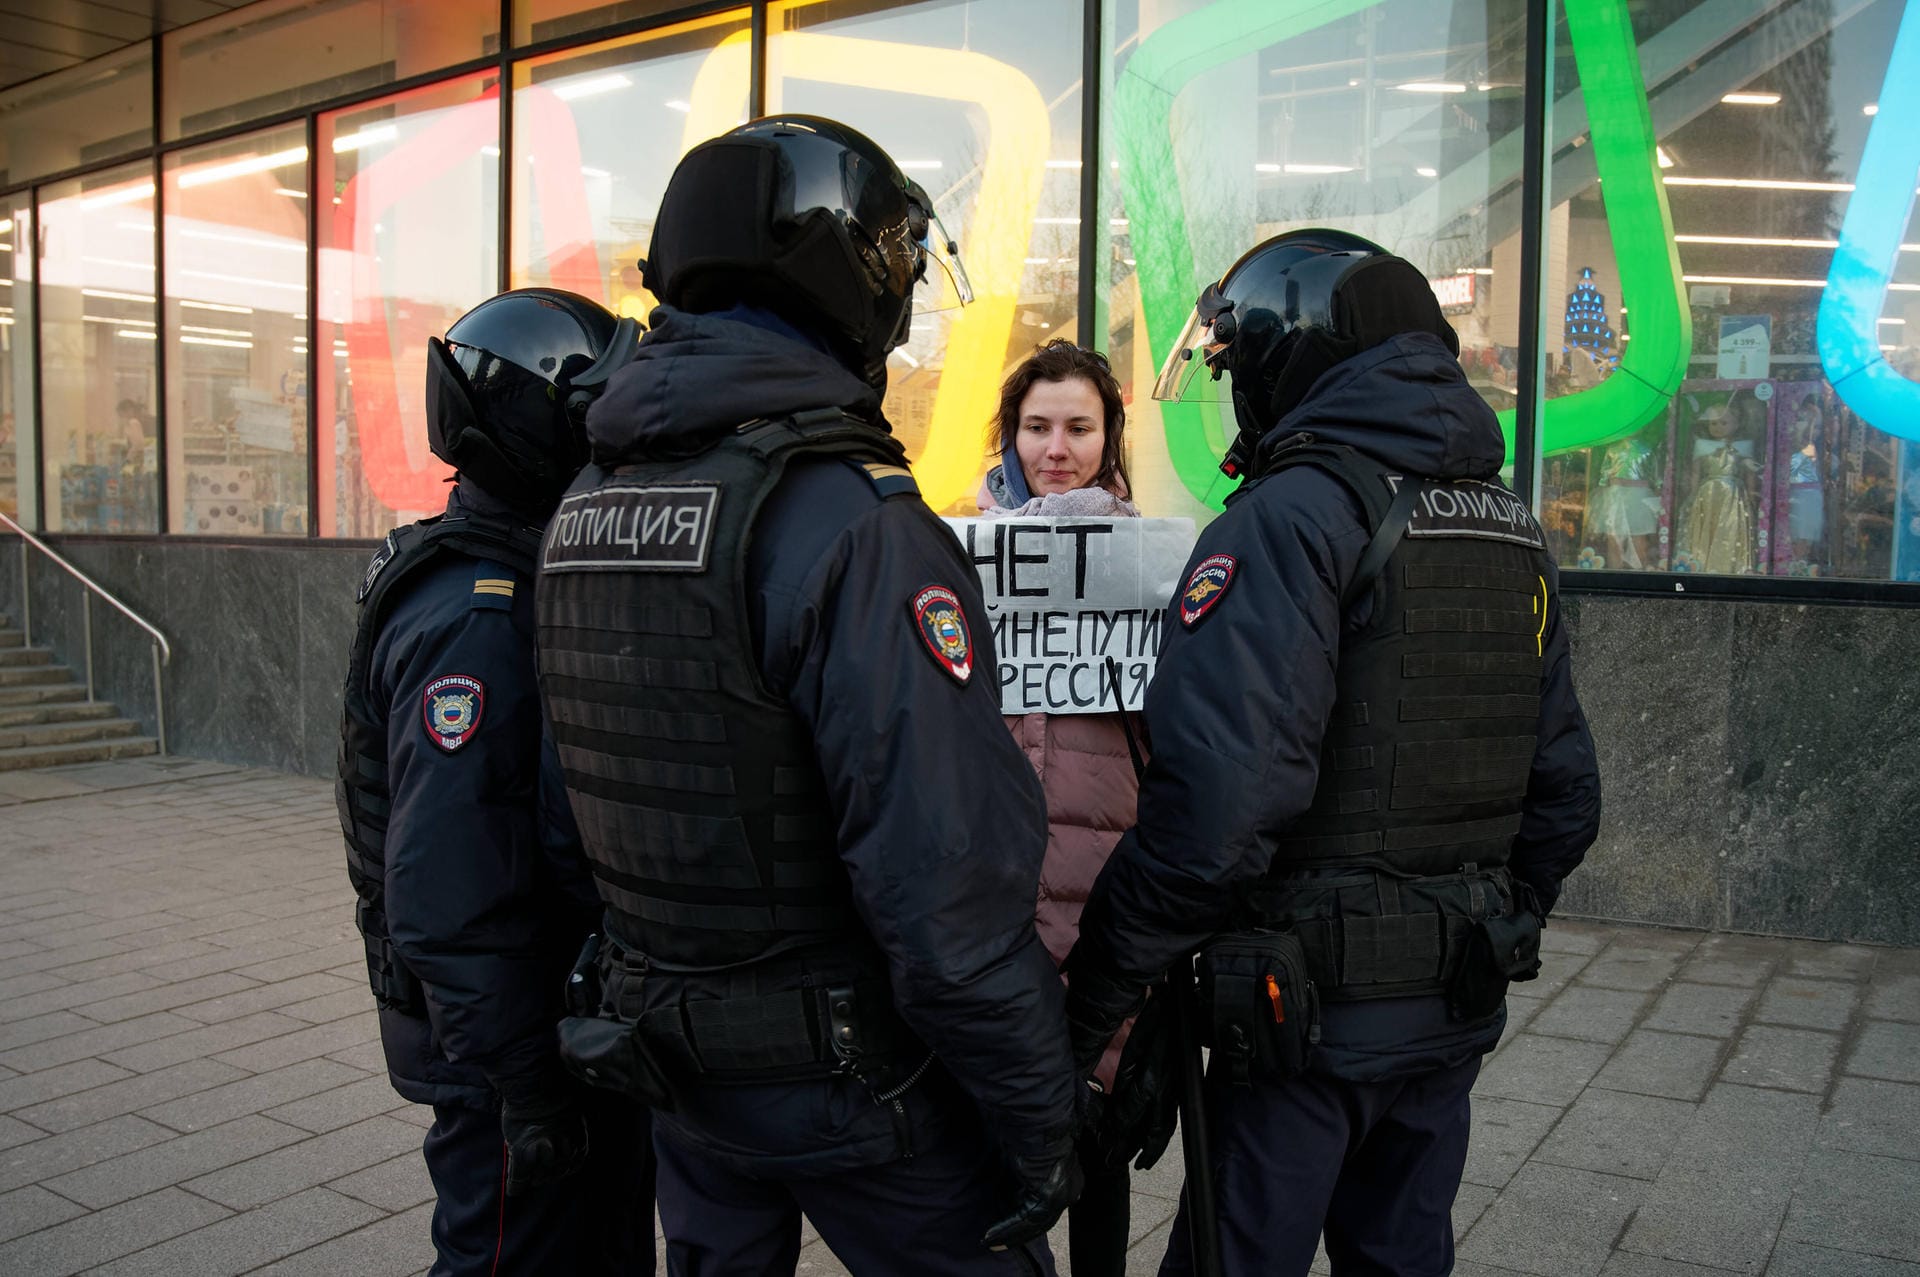 28. Februar: Moskau und Kiew sprechen erstmals seit Beginn des Krieges miteinander – ergebnislos. Russland wird von Fußball-Wettbewerben ausgeschlossen, Sanktionen im Sport folgen. Abgebildet: Anti-Kriegs-Protest in Moskau.